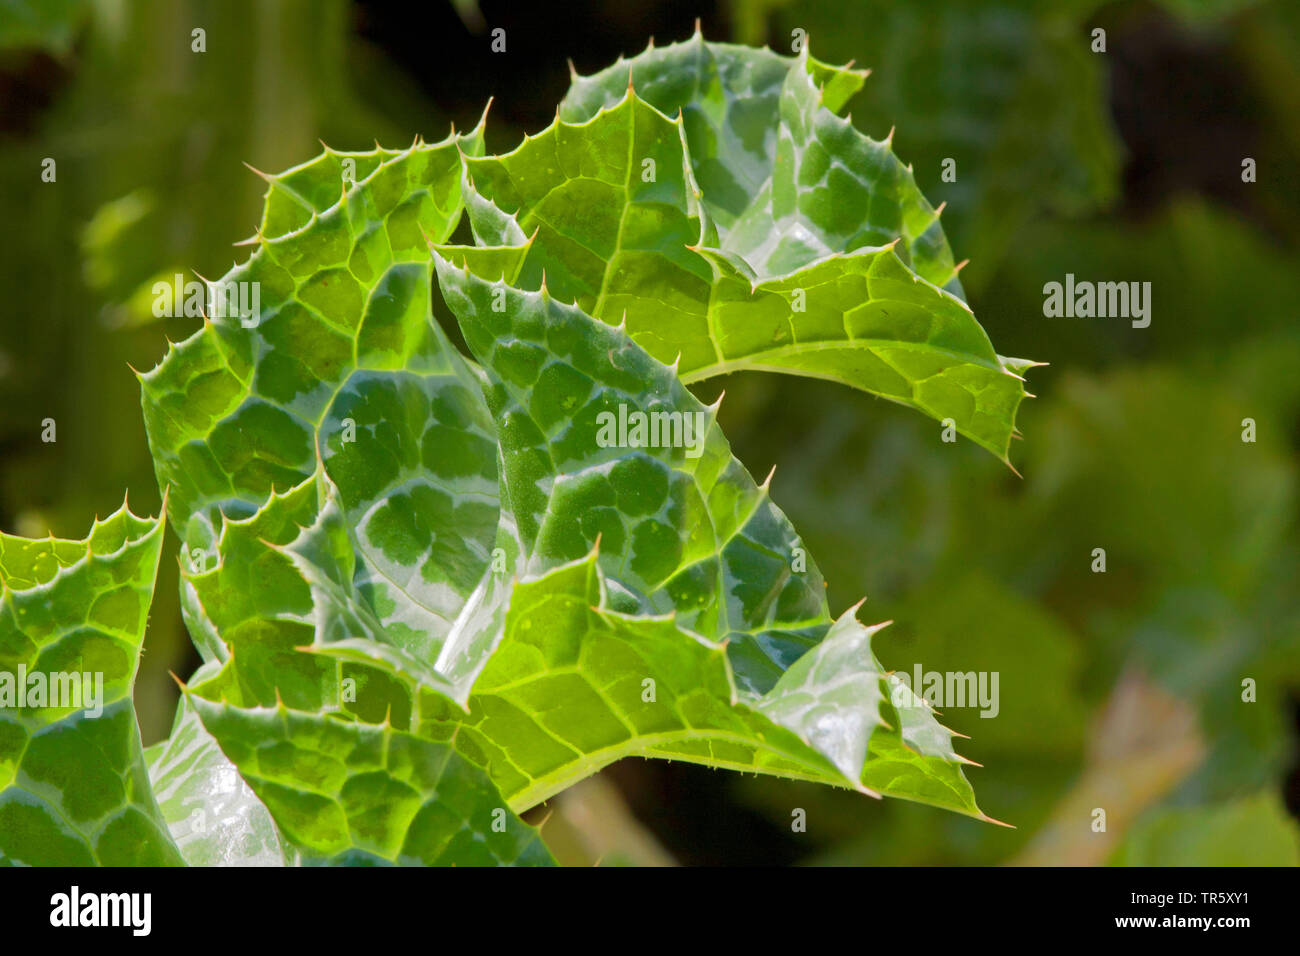 Blessed milkthistle, Lady's thistle, Milk thistle (Silybum marianum, Carduus marianus), leaf, Germany Stock Photo